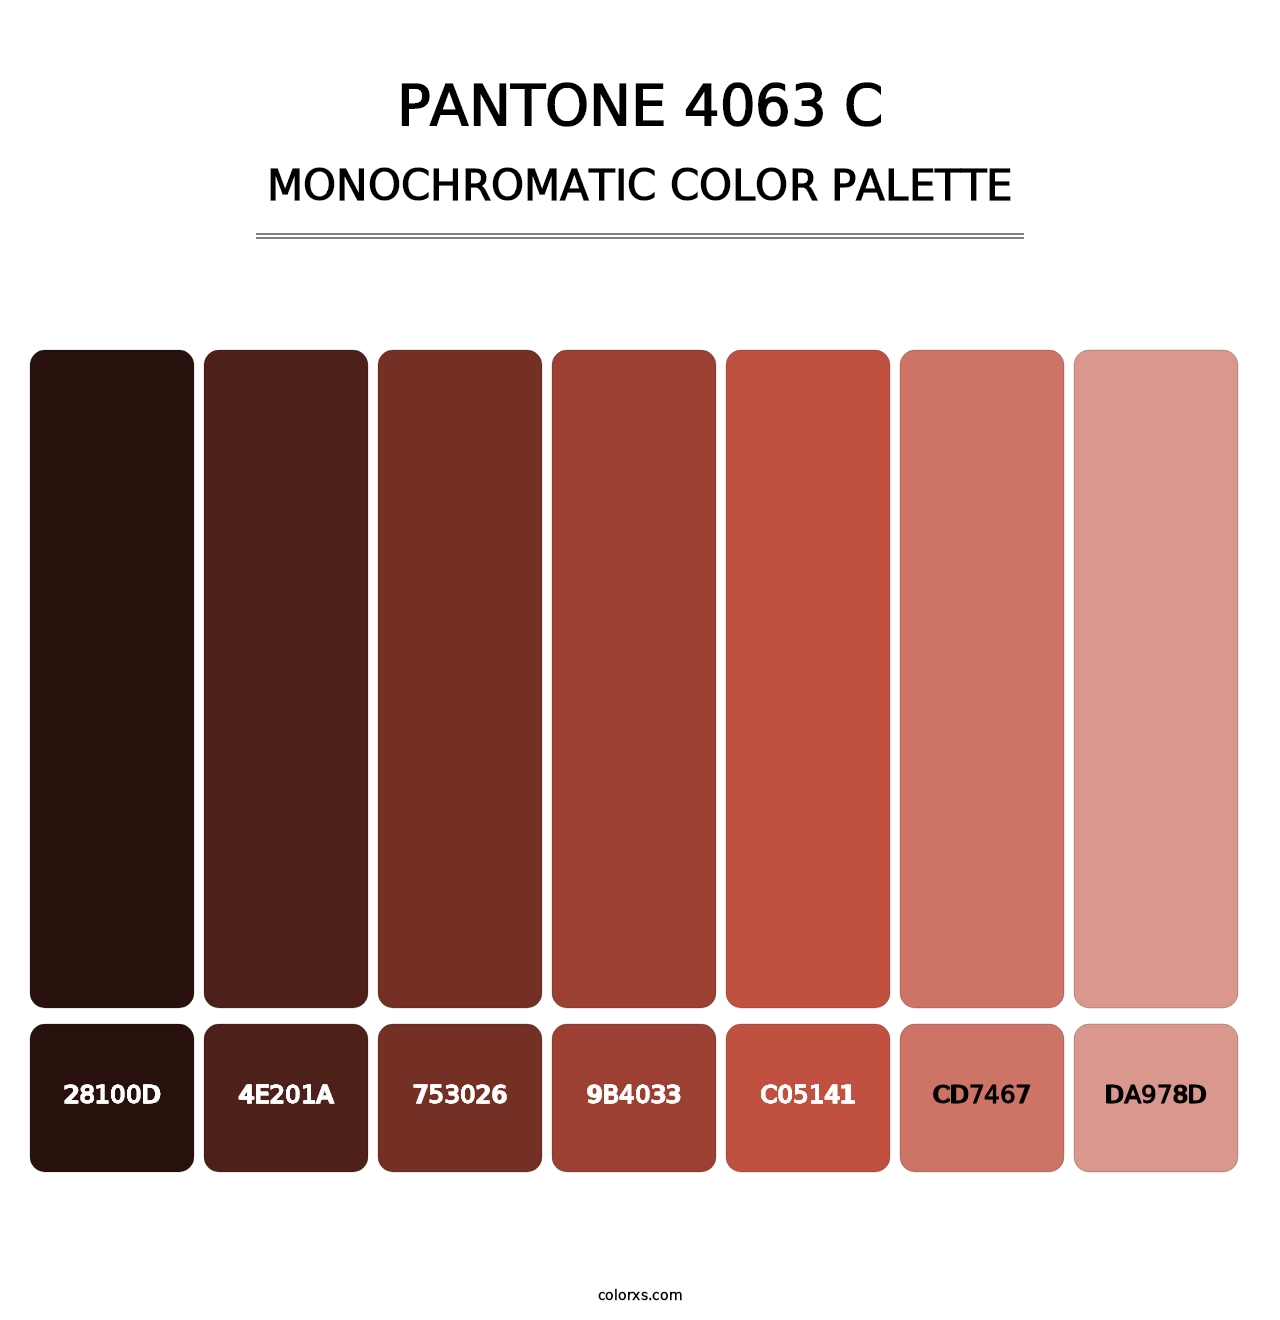 PANTONE 4063 C - Monochromatic Color Palette